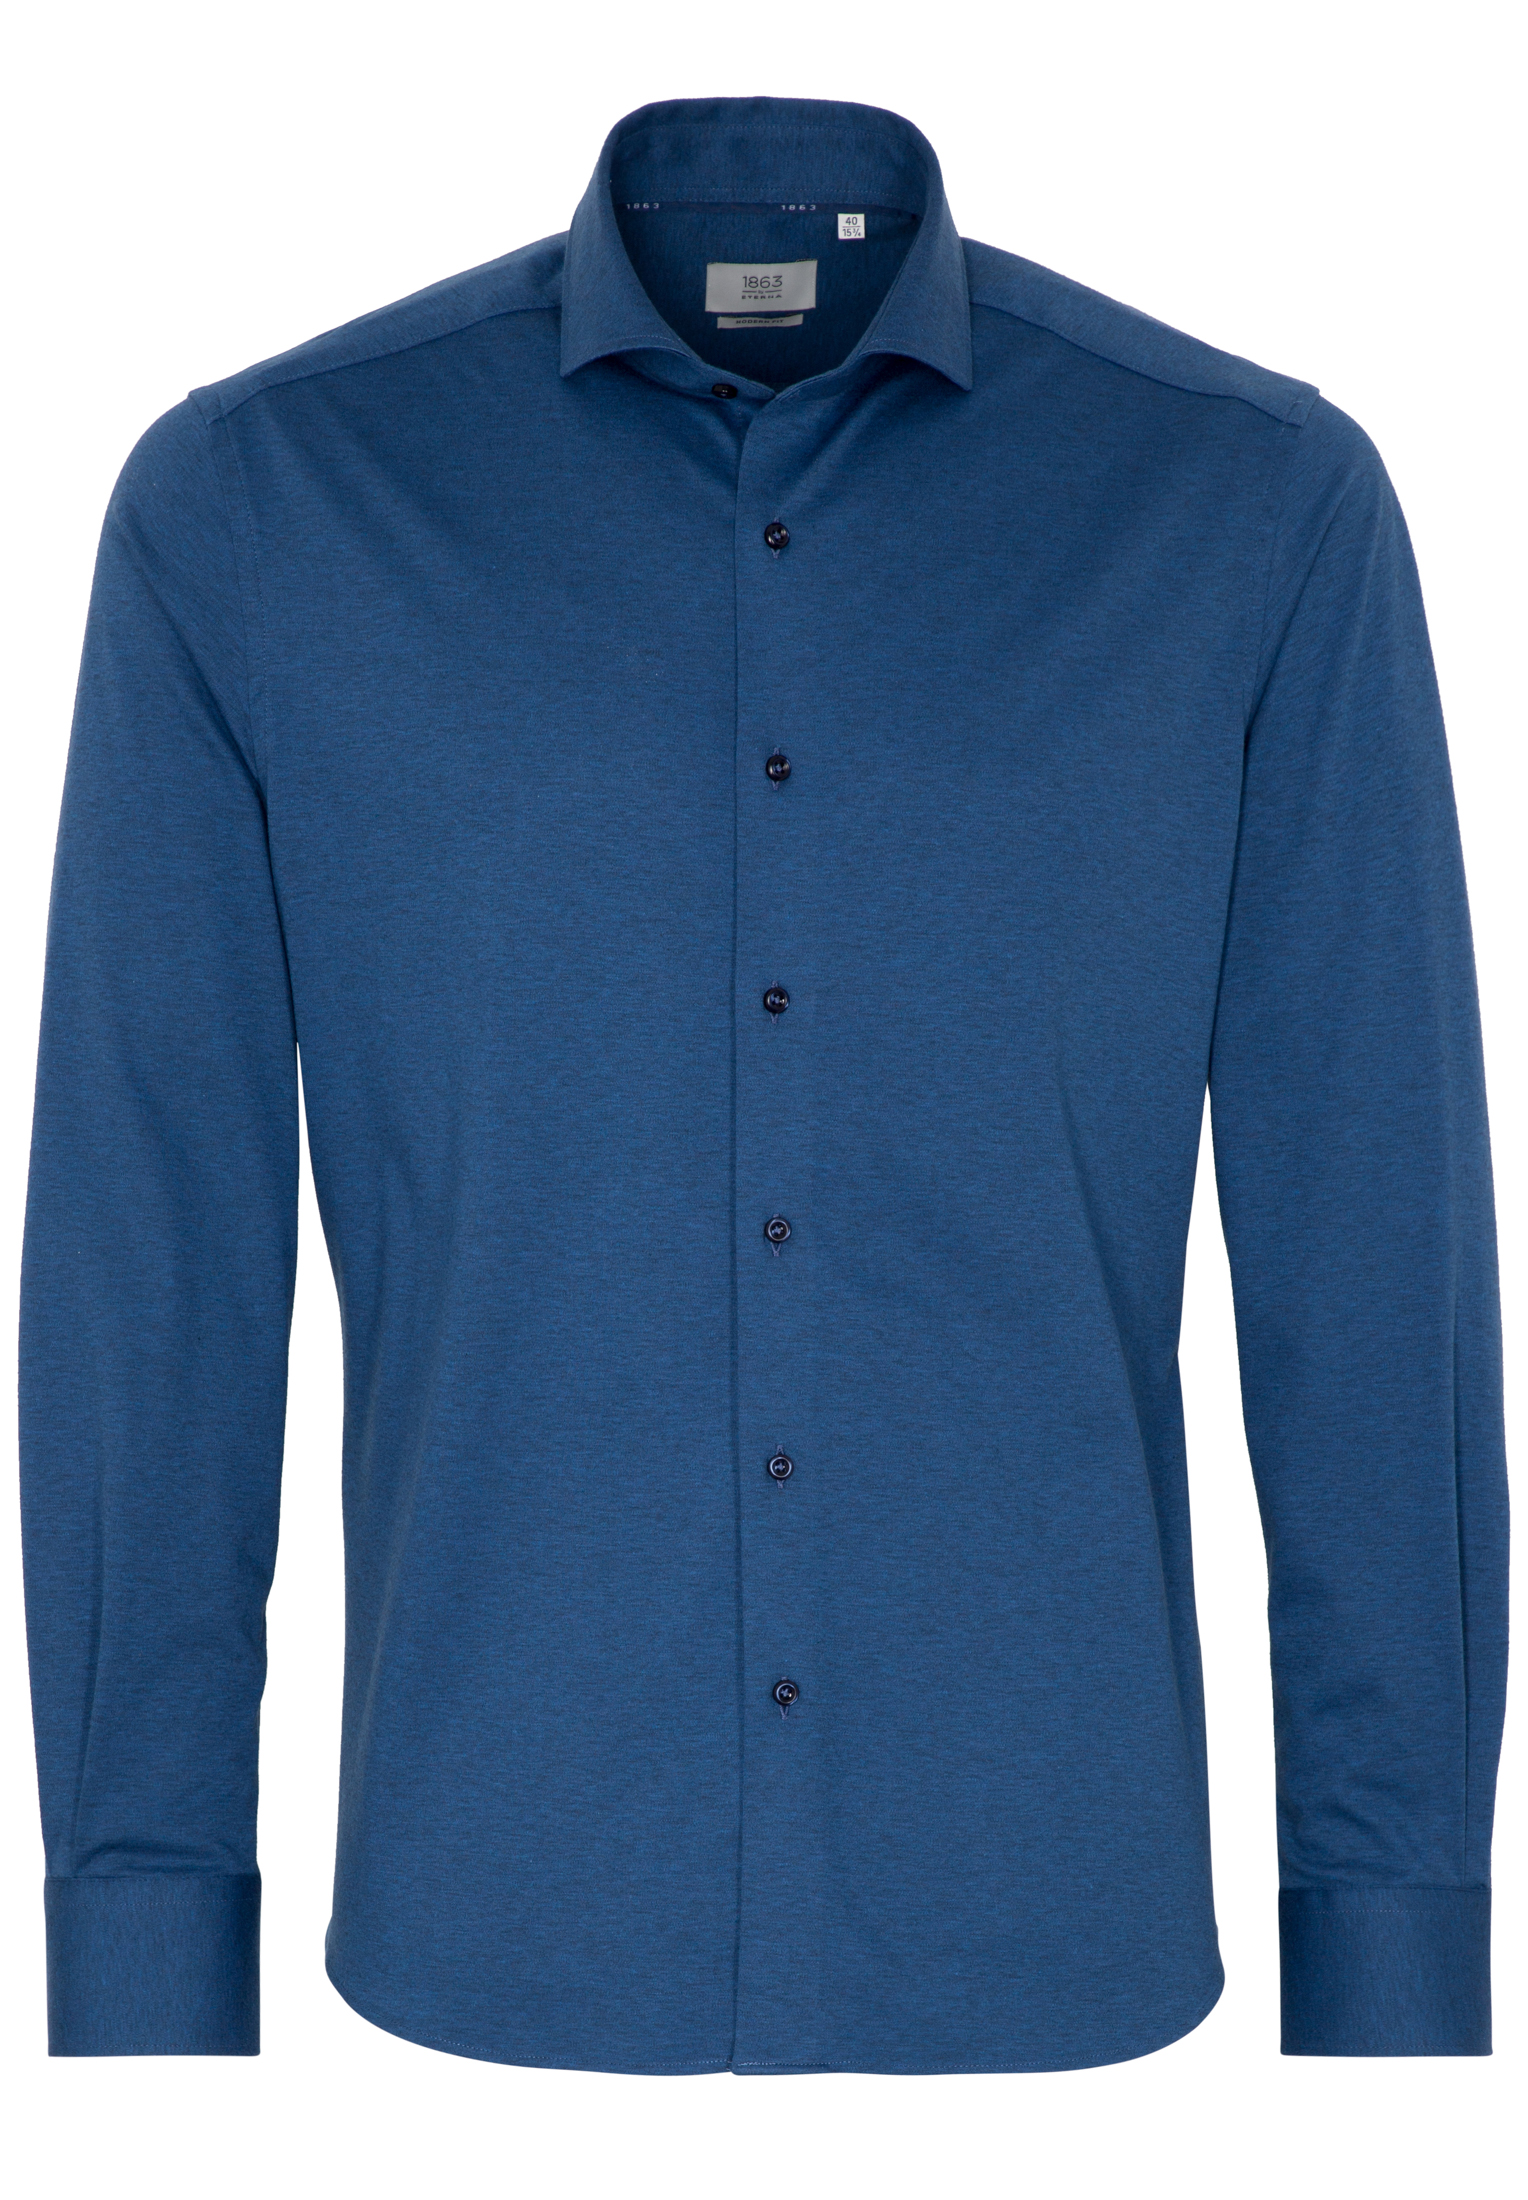 Eterna Skjorte, Blå, 45